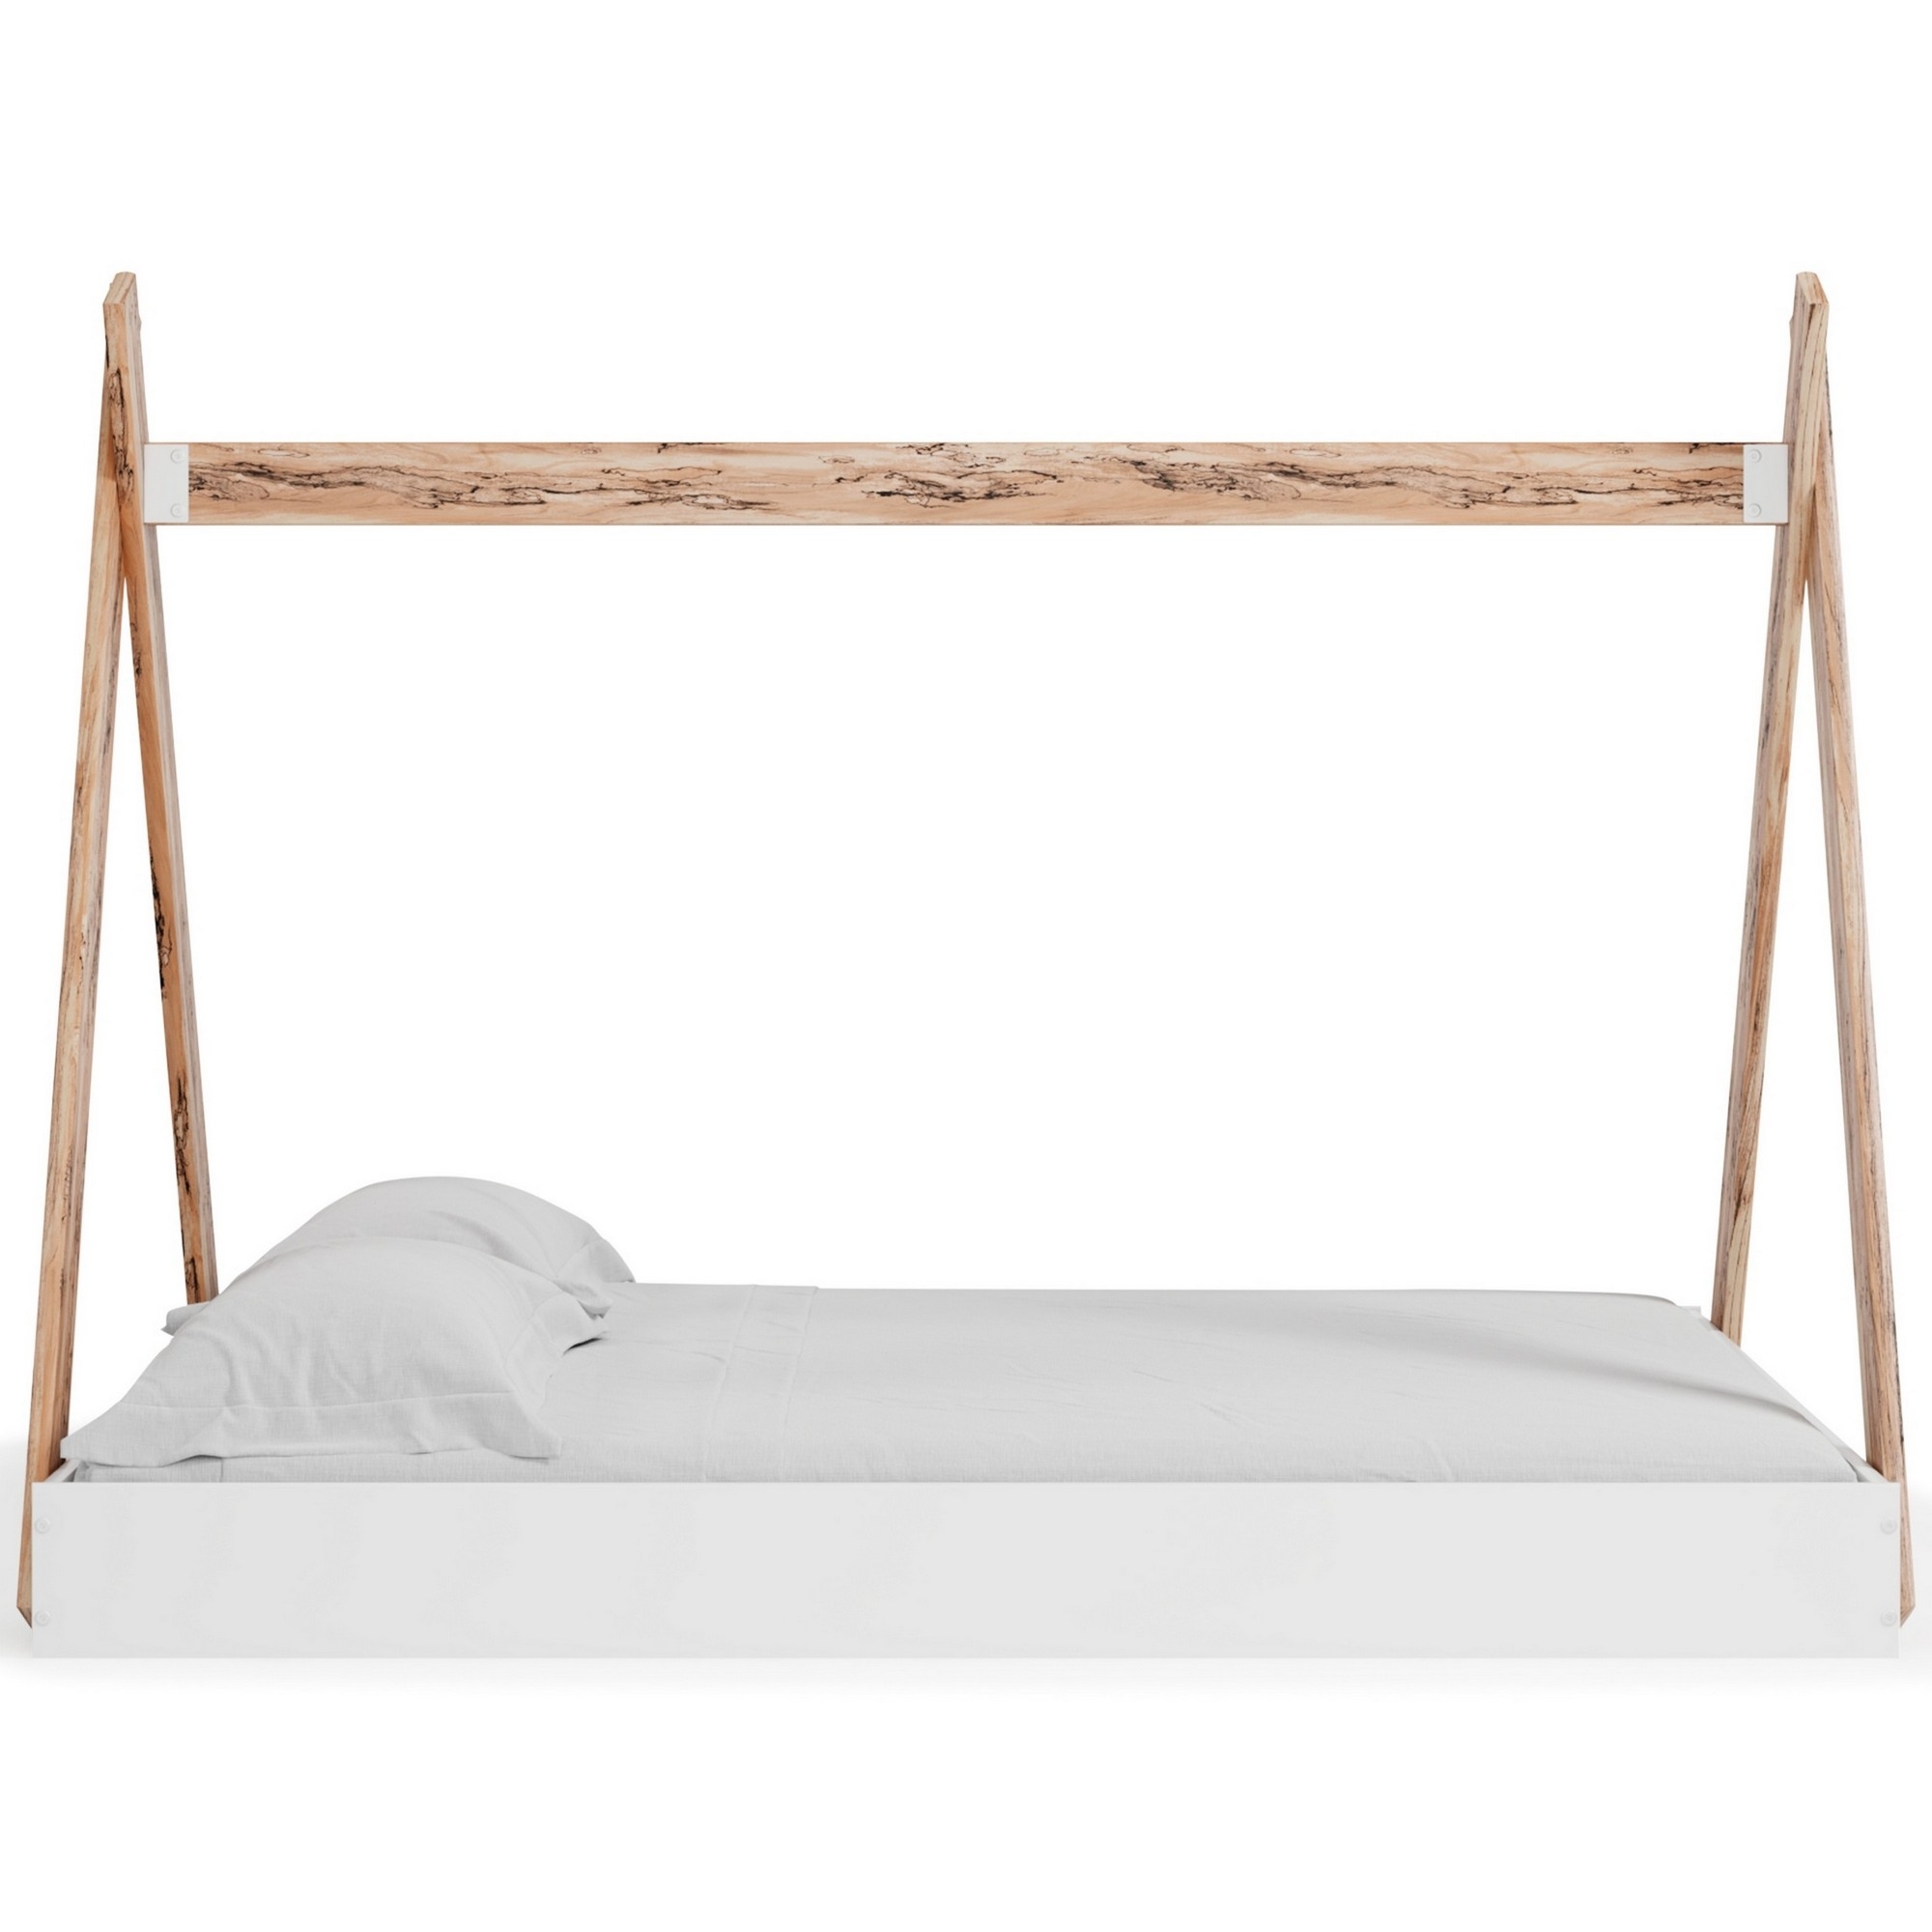 Pipa Modern Full Bed, Crossed Wood A Frame Tent Stand, Crisp White Base- Saltoro Sherpi